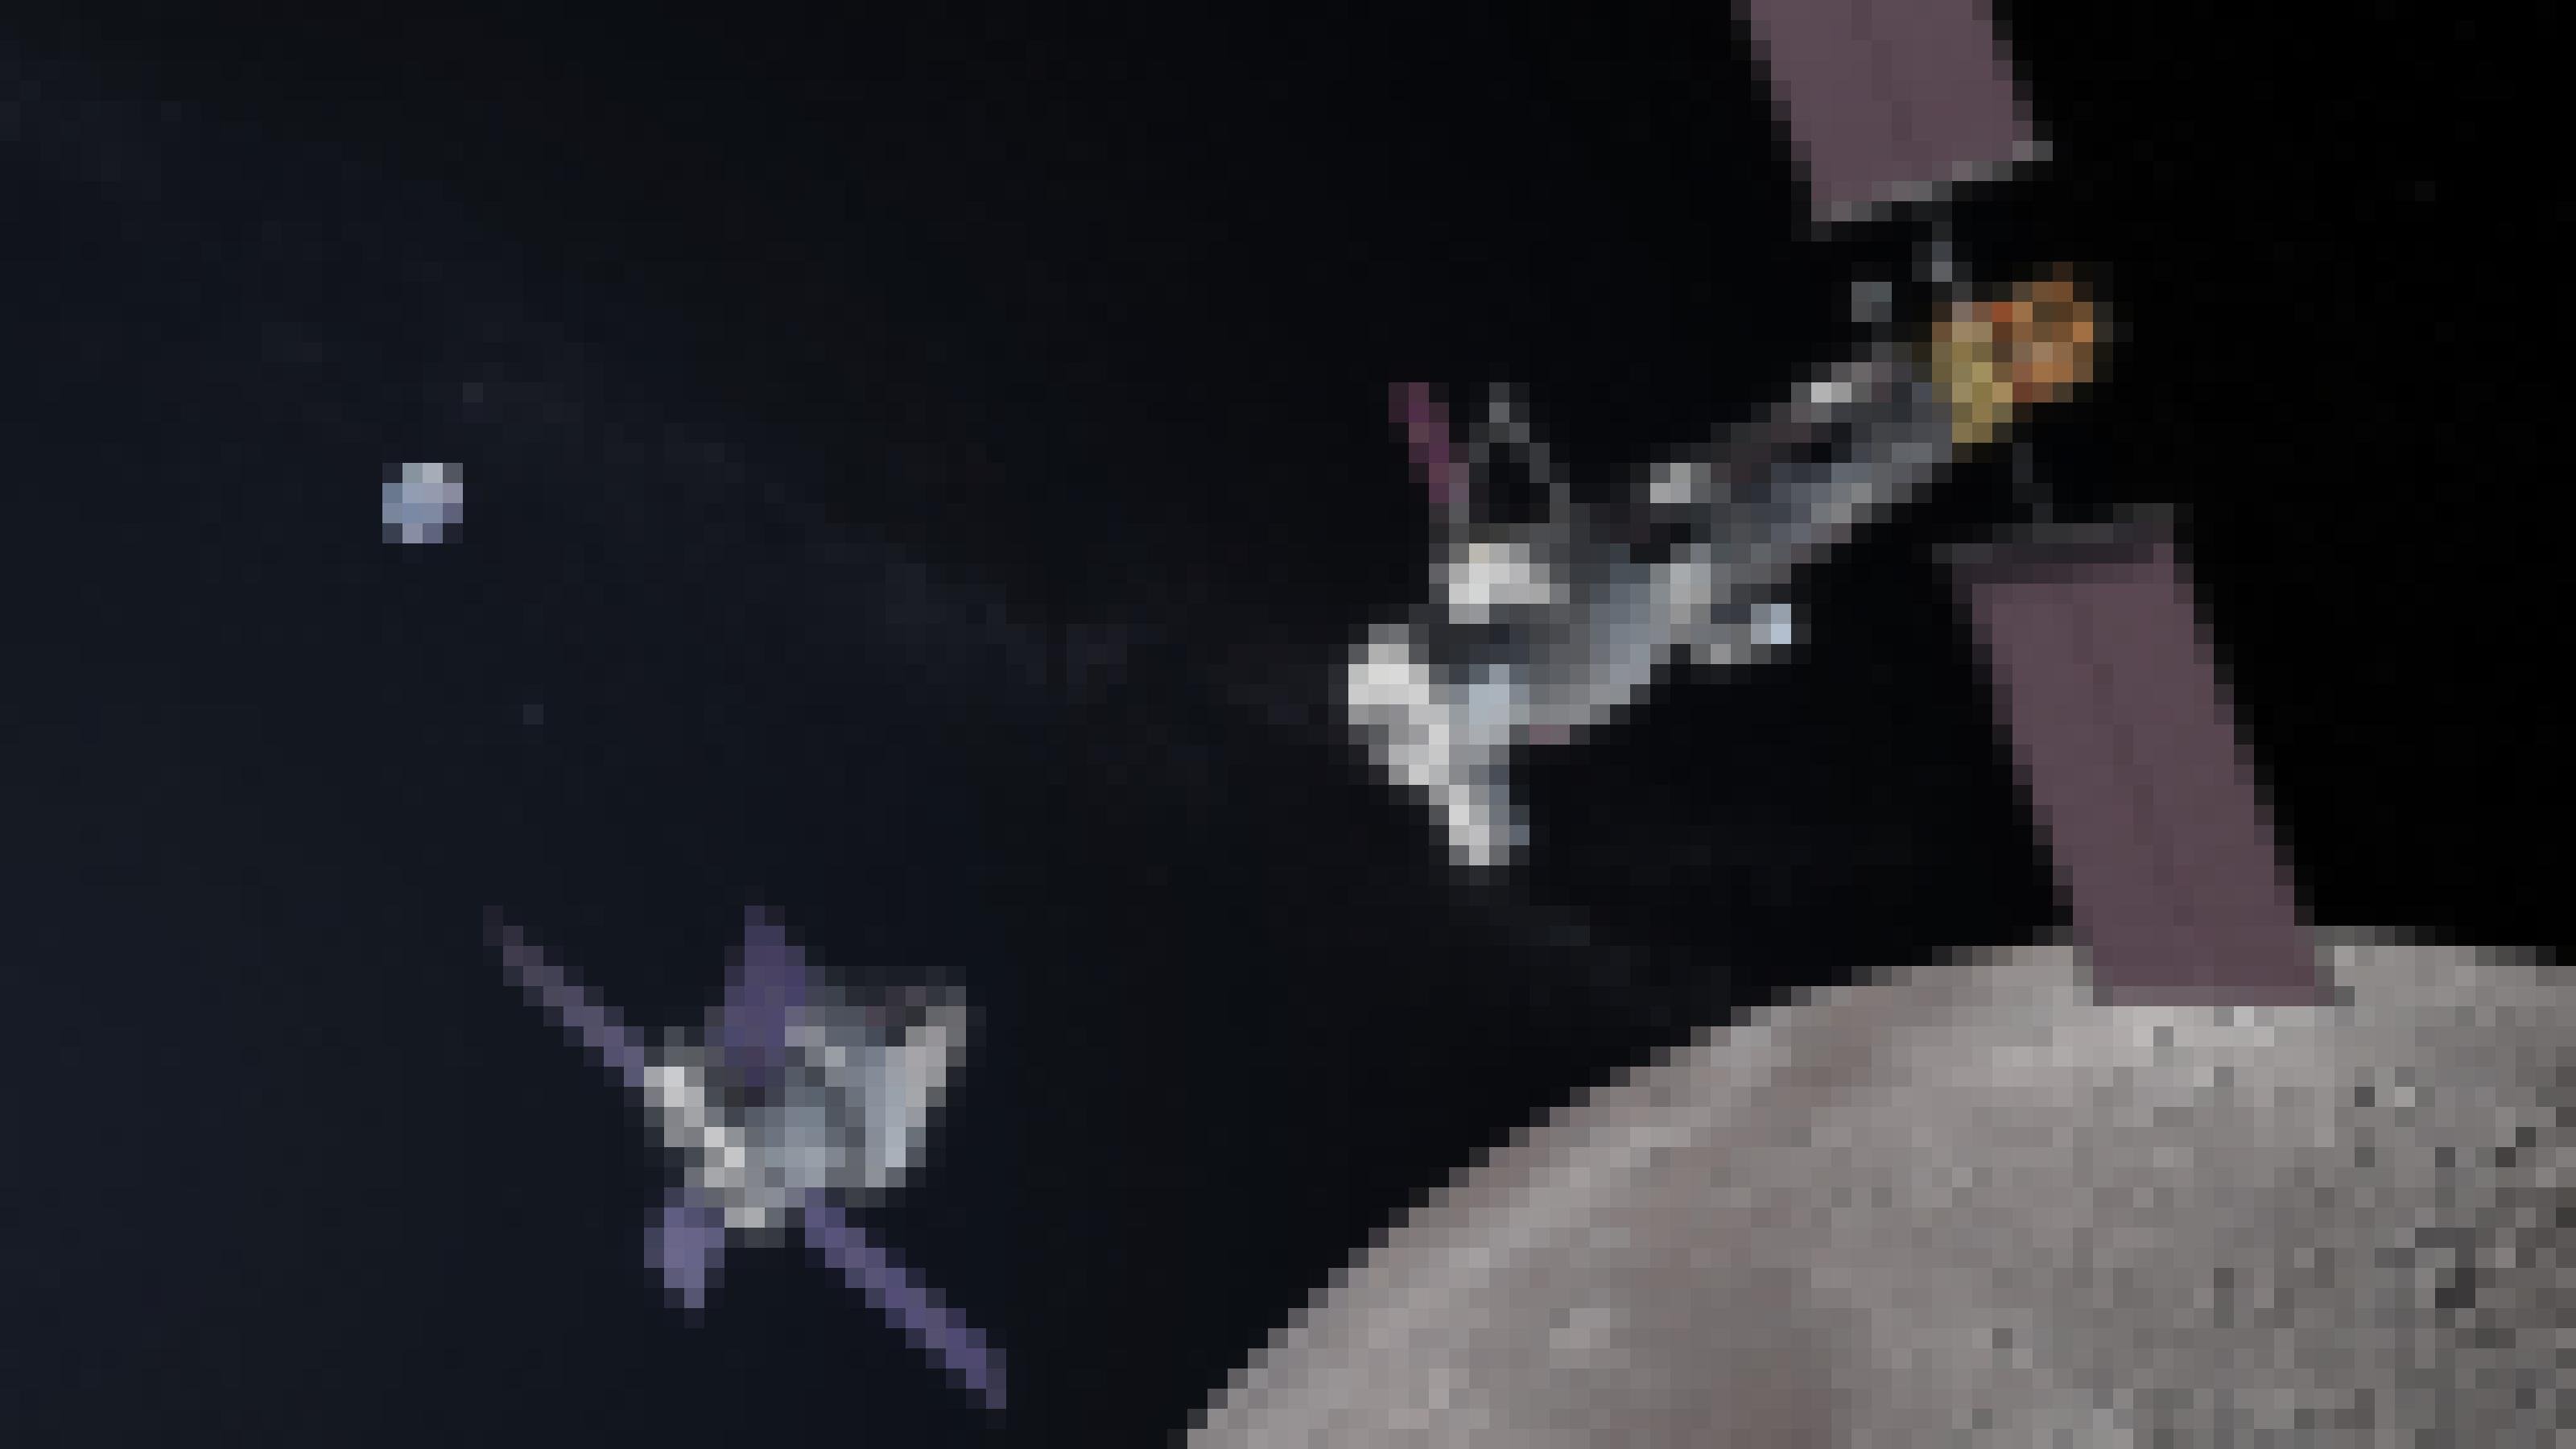 Grafik: Lunar Gateway beim Rendezvous mit einem Orion-Raumschiff im Mondorbit, im Hintergrund die kleine Erde